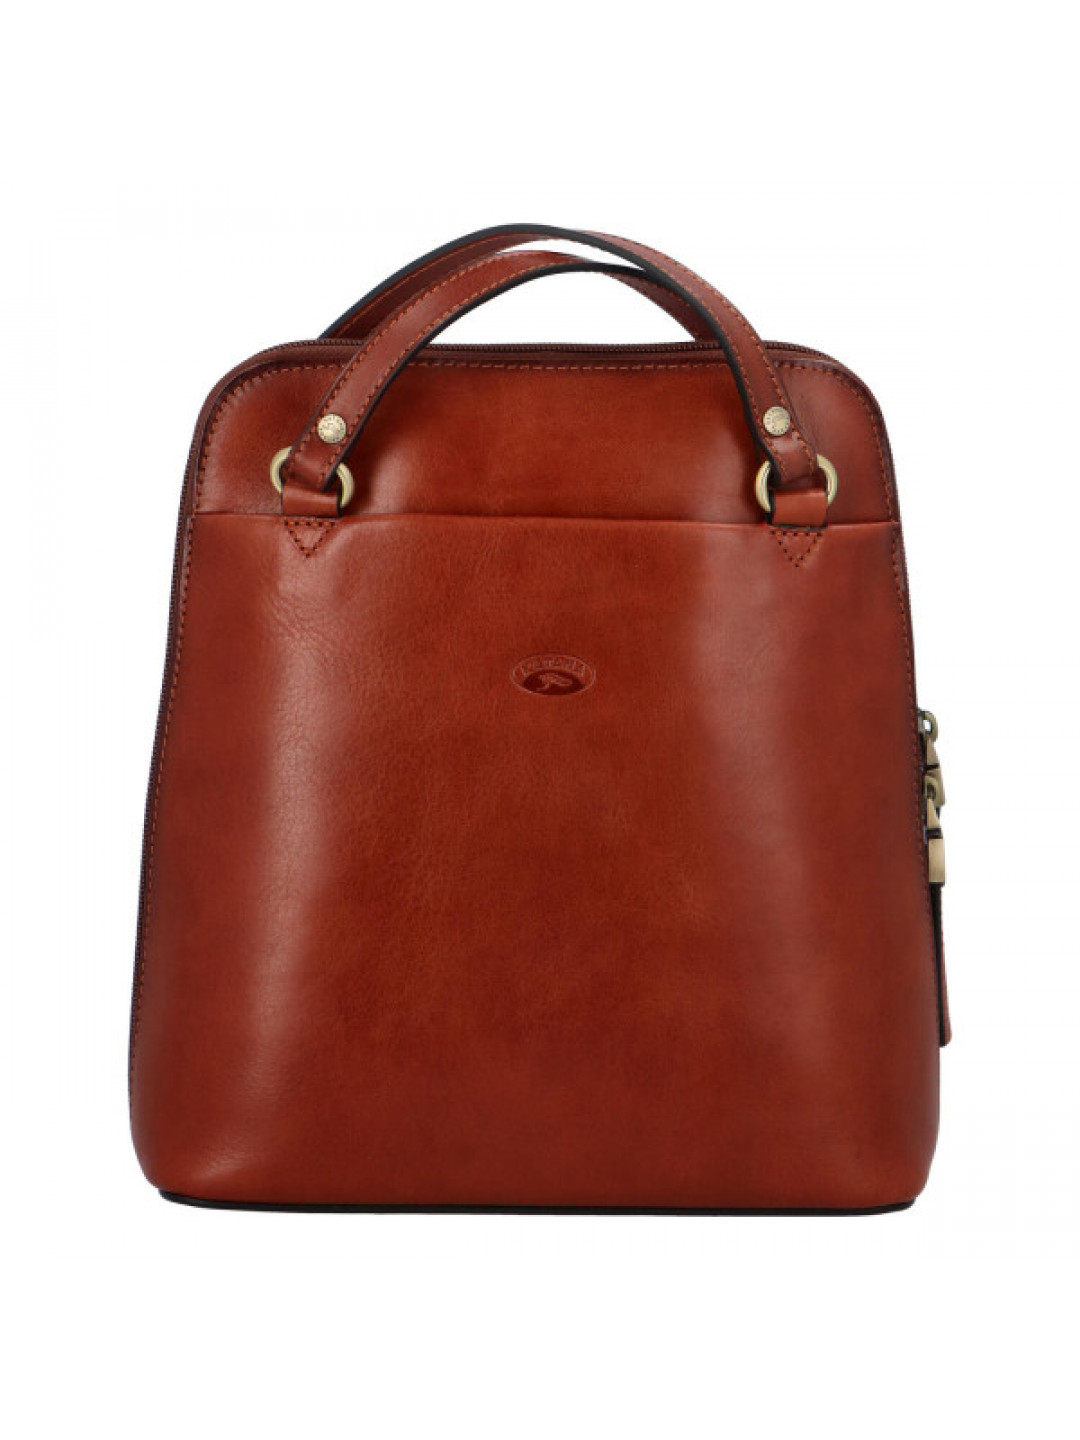 Luxusní kožený kabelko batoh 2 v 1 Katana deluxe hnědý